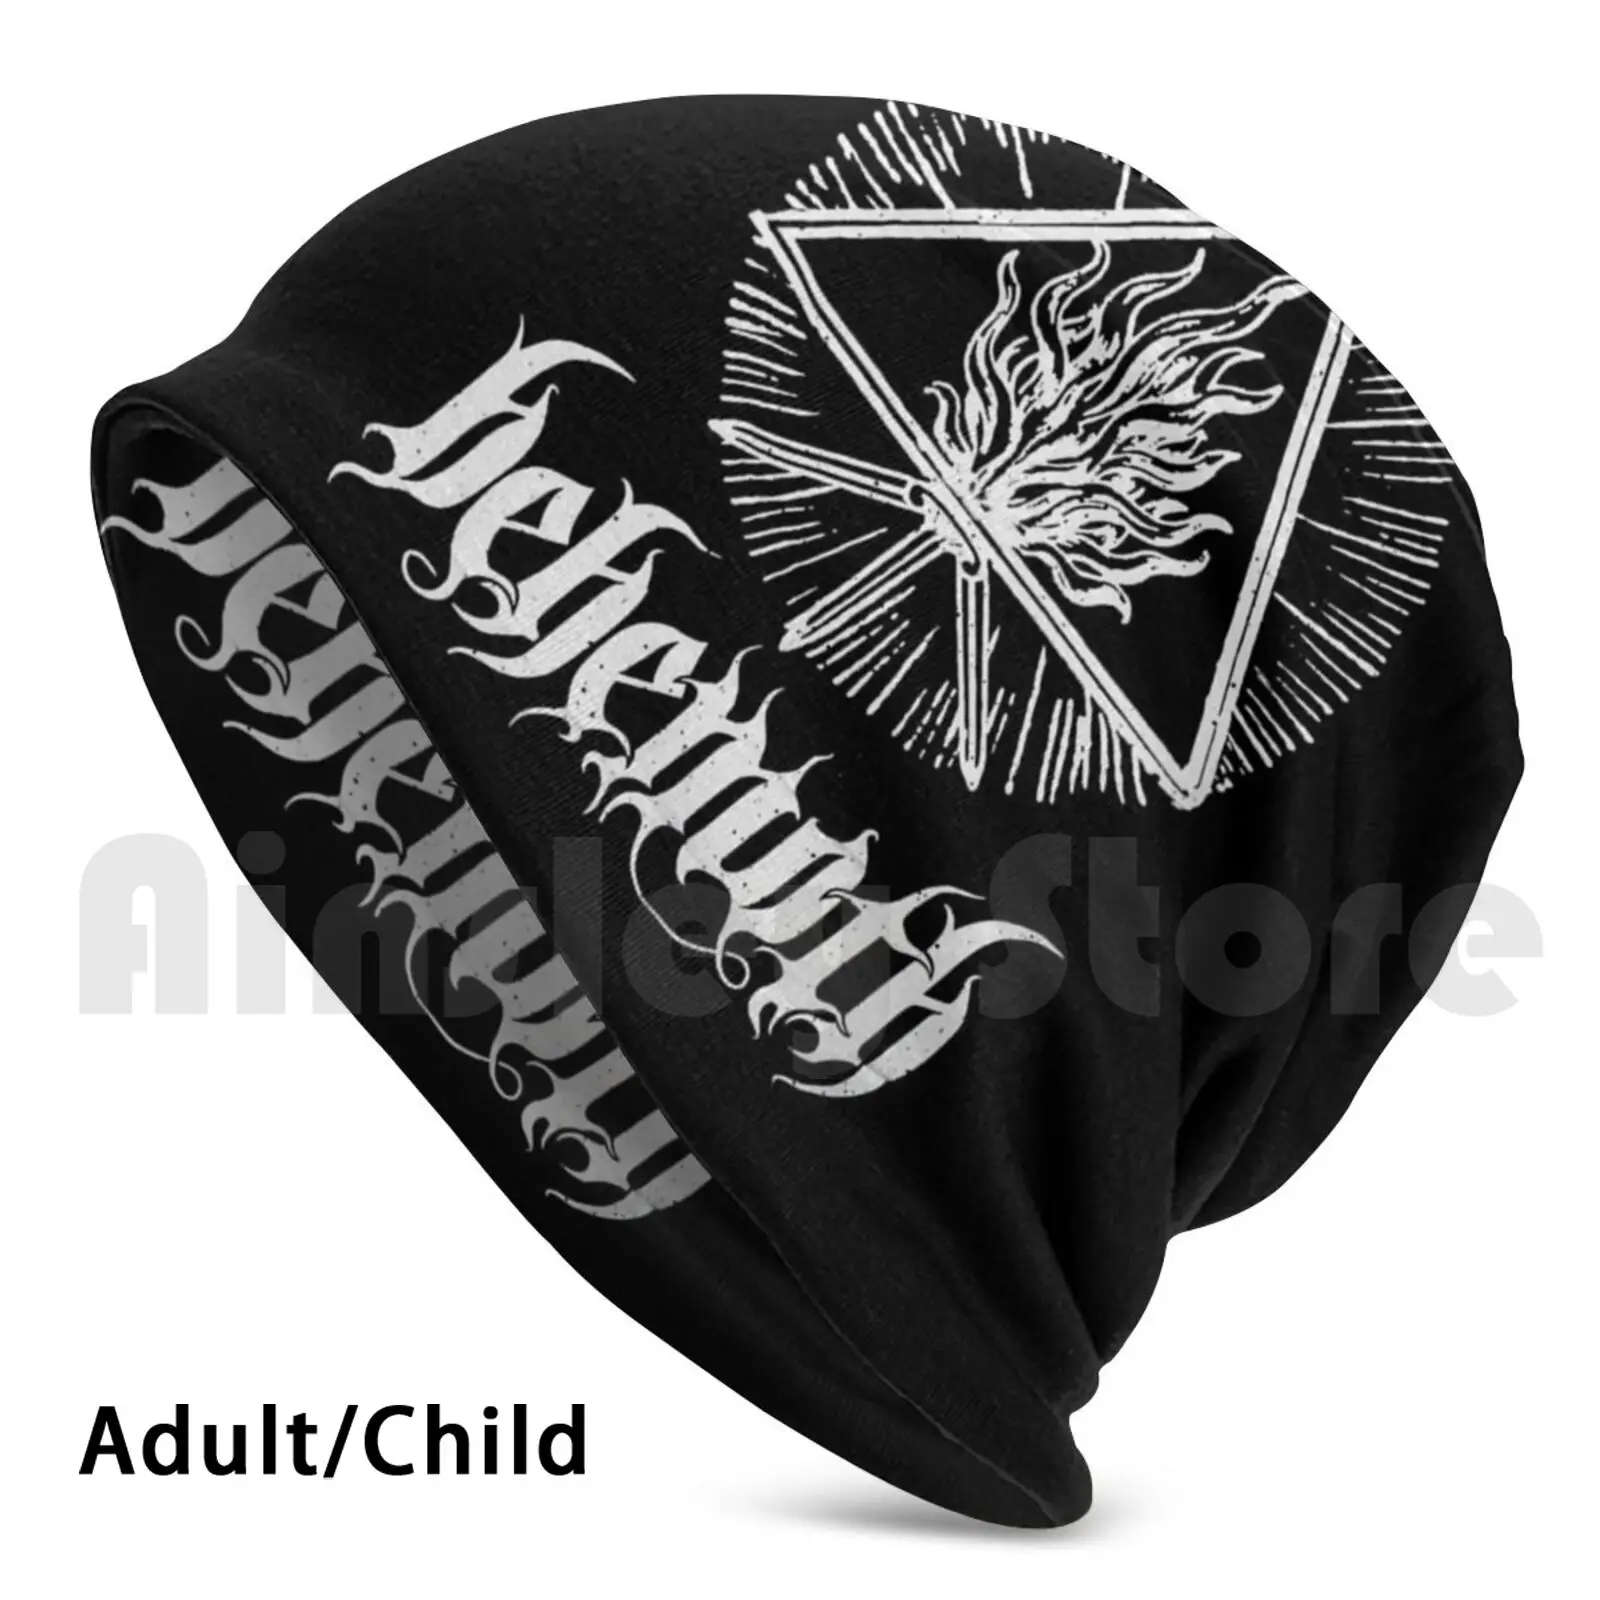 

Behemoth художественные шапки с логотипом, вязаная шапка, хип-хоп Behemoth Band 99art, польский Экстремальный металлический ремешок из Гданьска